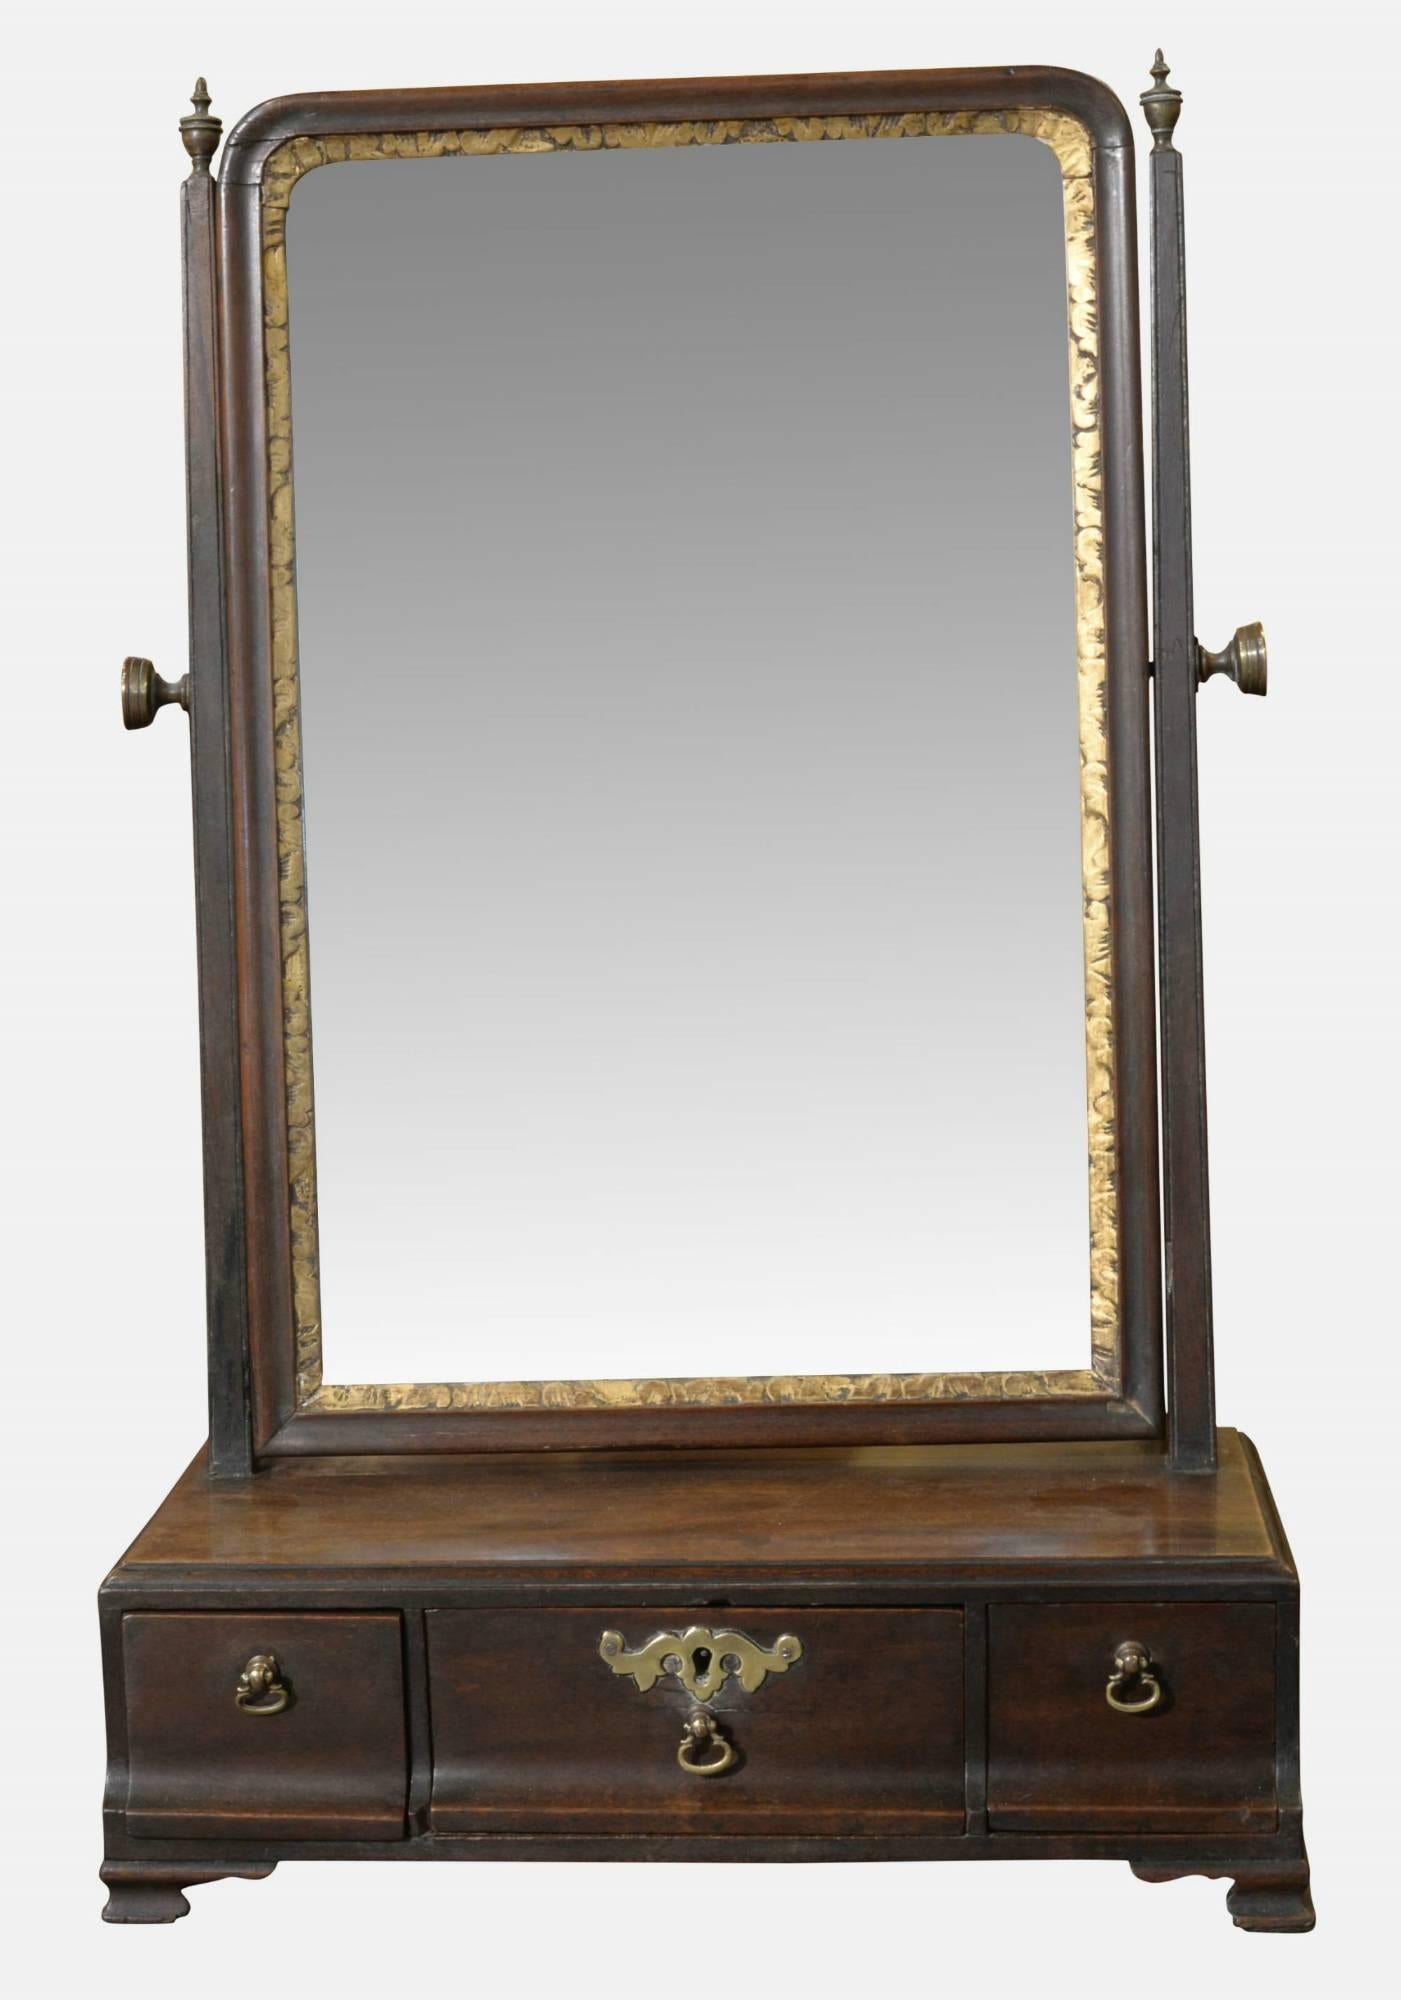 Mid-18th century mahogany and gilt framed toilet mirror.